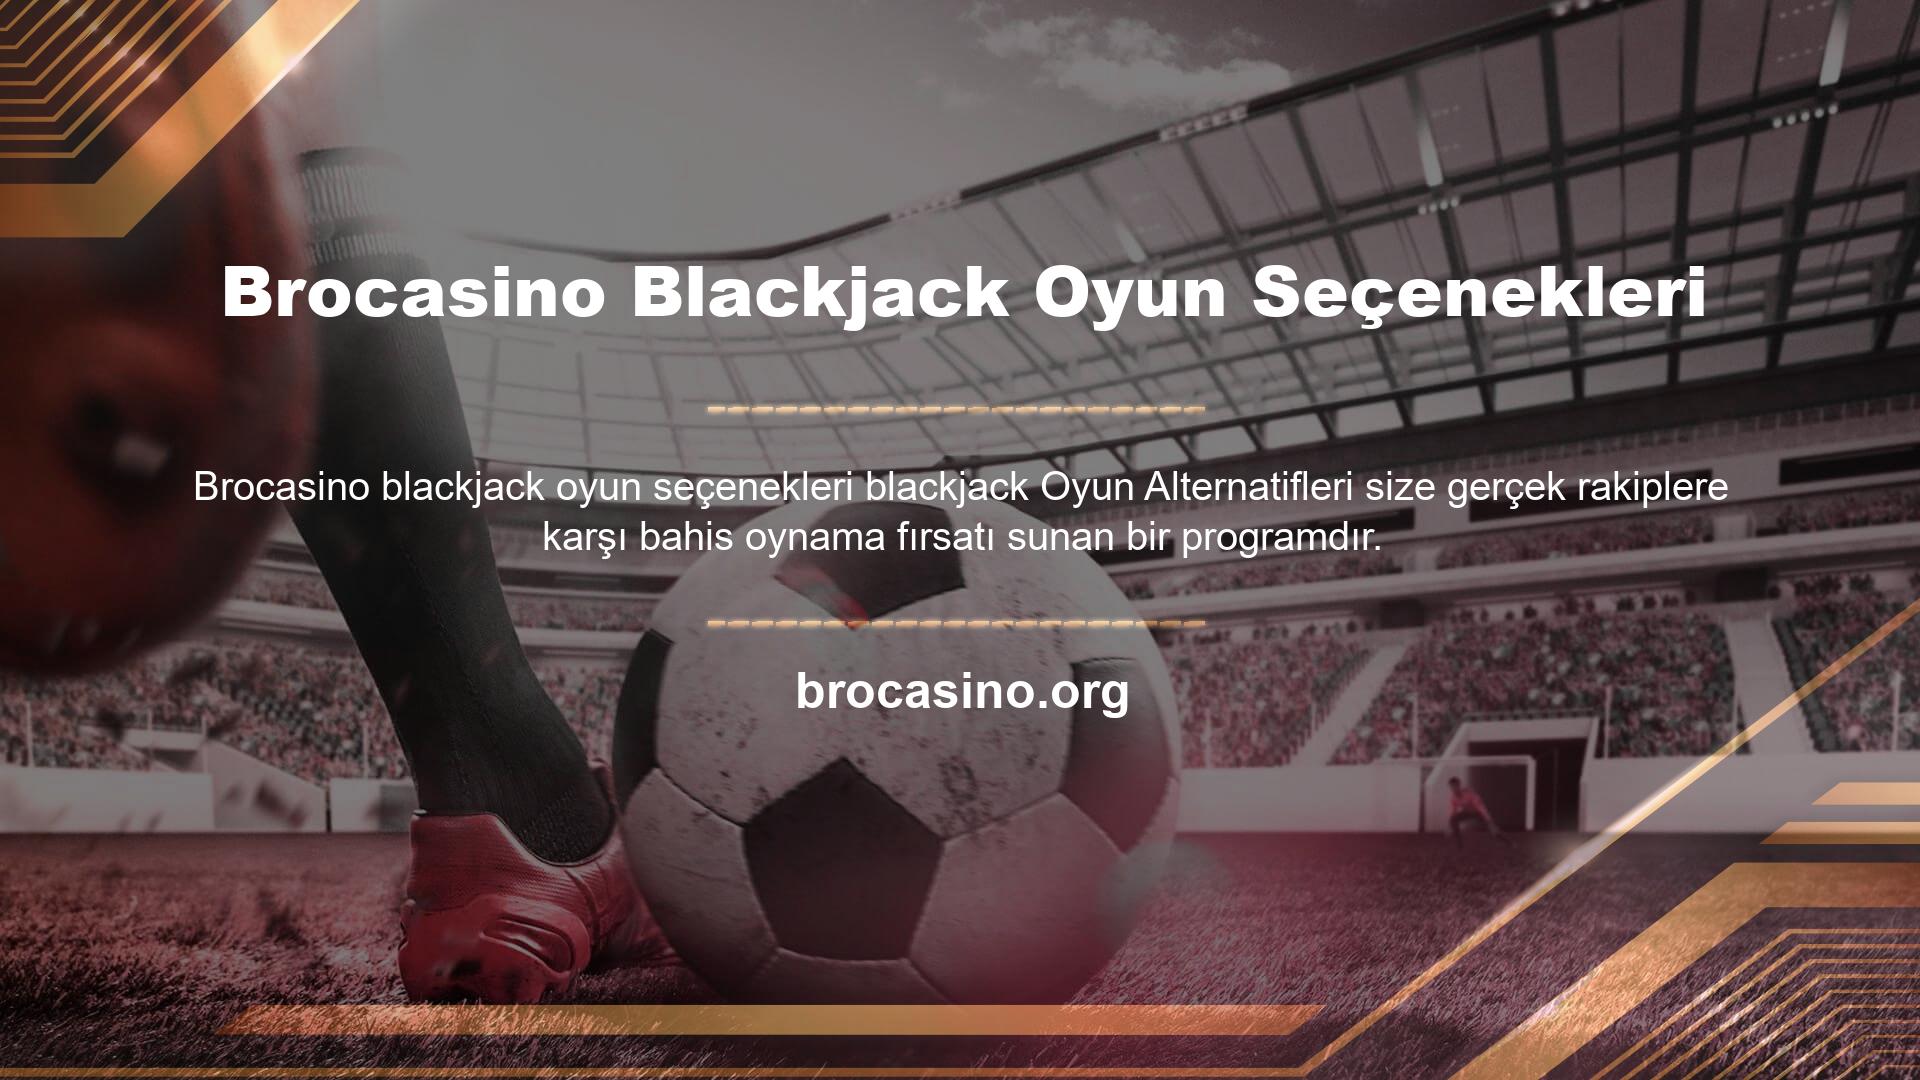 Hesaplamalı dilin, Brocasino blackjack oyun kategorisinin öncüsü olduğuna inanılan 21 adlı alternatif bir dili vardır